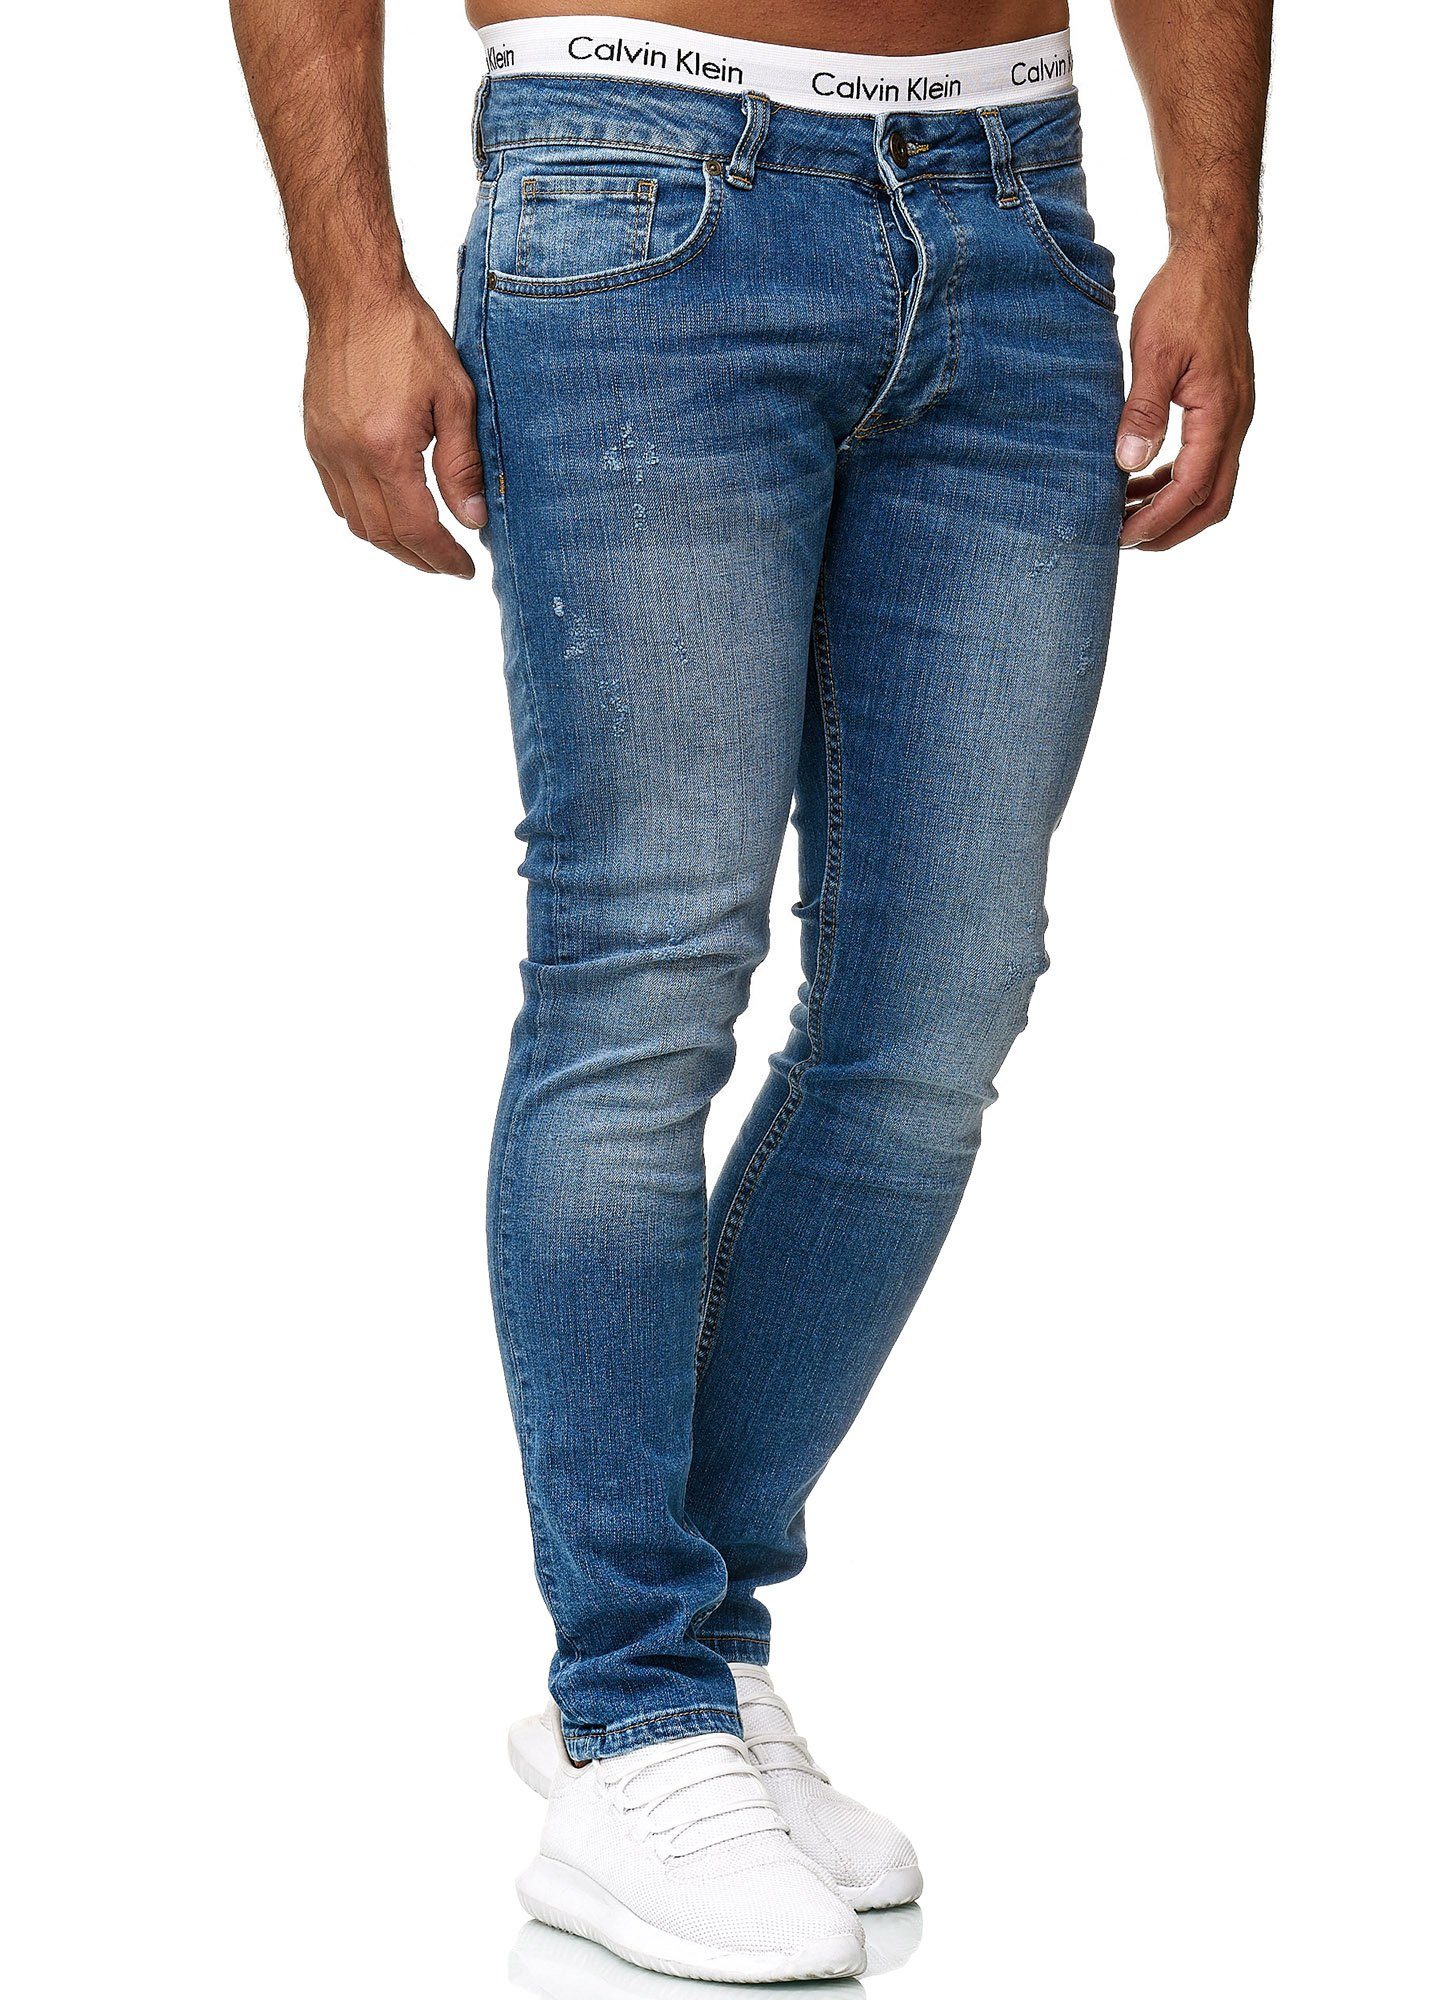 Designer Basic Hose Regular Used Skinny Blue Jeans Jeanshose Herren Code47 Skinny-fit-Jeans Fit Old Code47 601